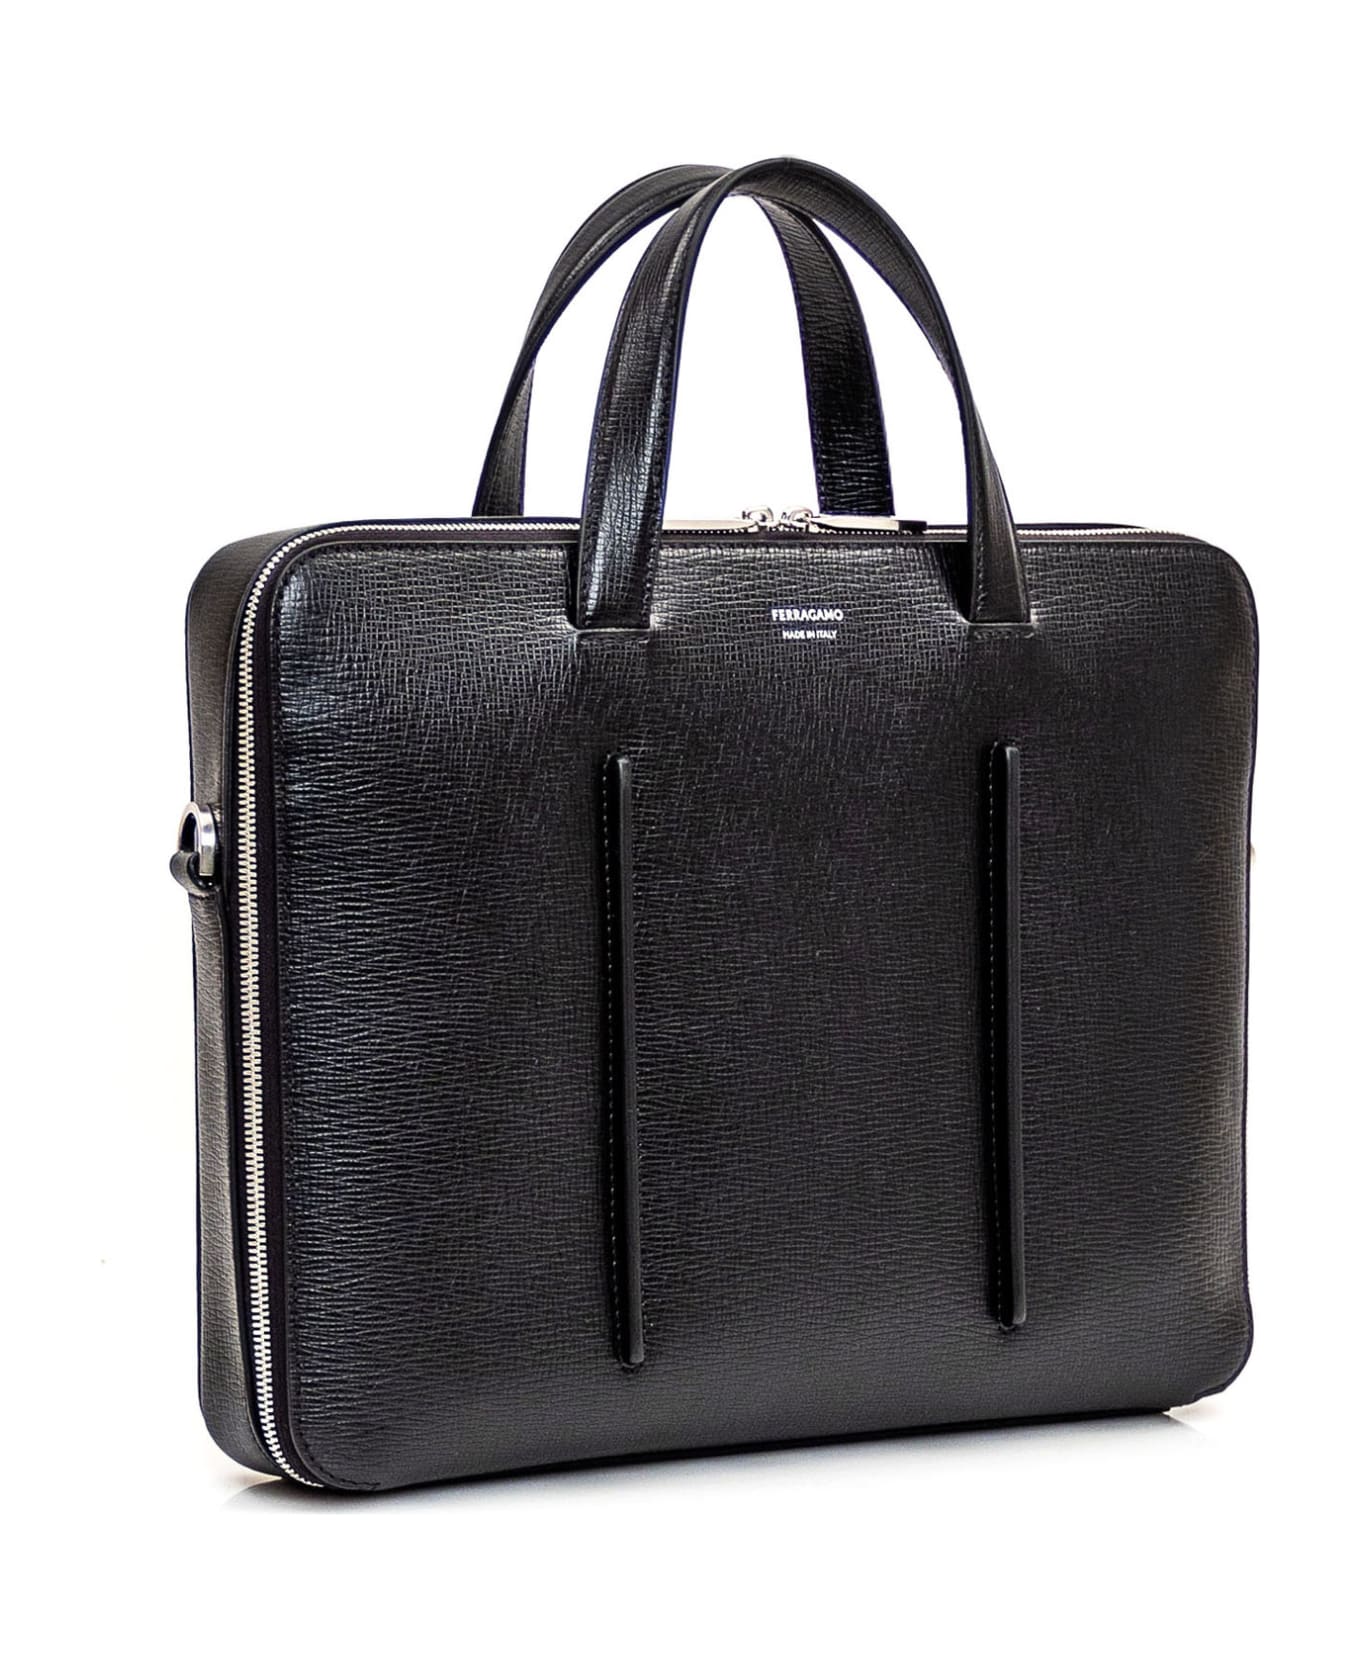 Ferragamo Business Bag With Single Compartment - NERO